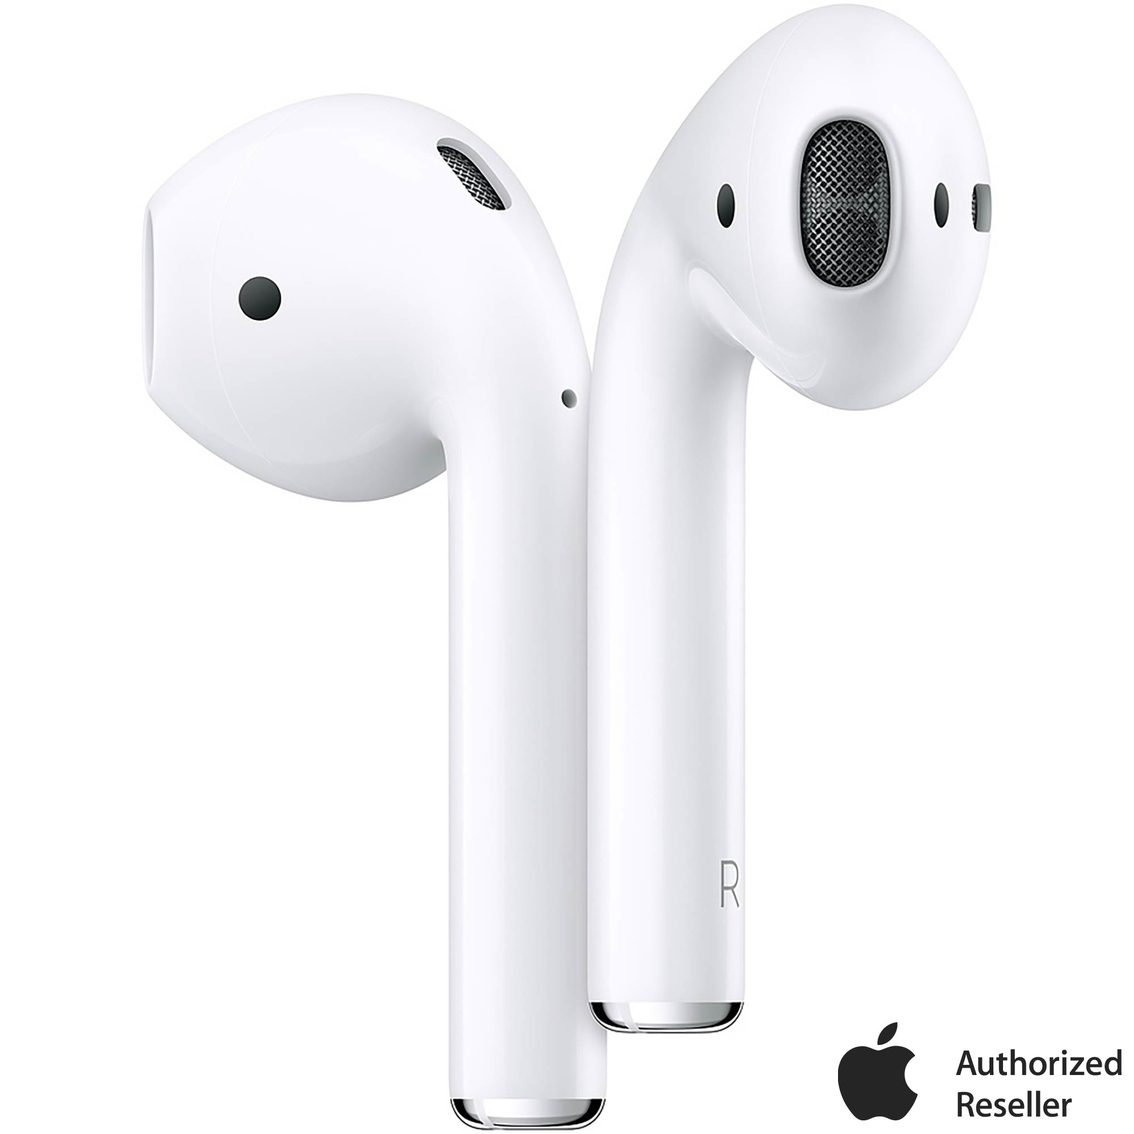 Schwarz Wanshop Kopfhörer Tasche für In Ear Ohrhörer für Apple AirPods Silikon Hülle Soft Case für Schutzhüllen-Silikonhülle Schutz AirPods Aufladen Case